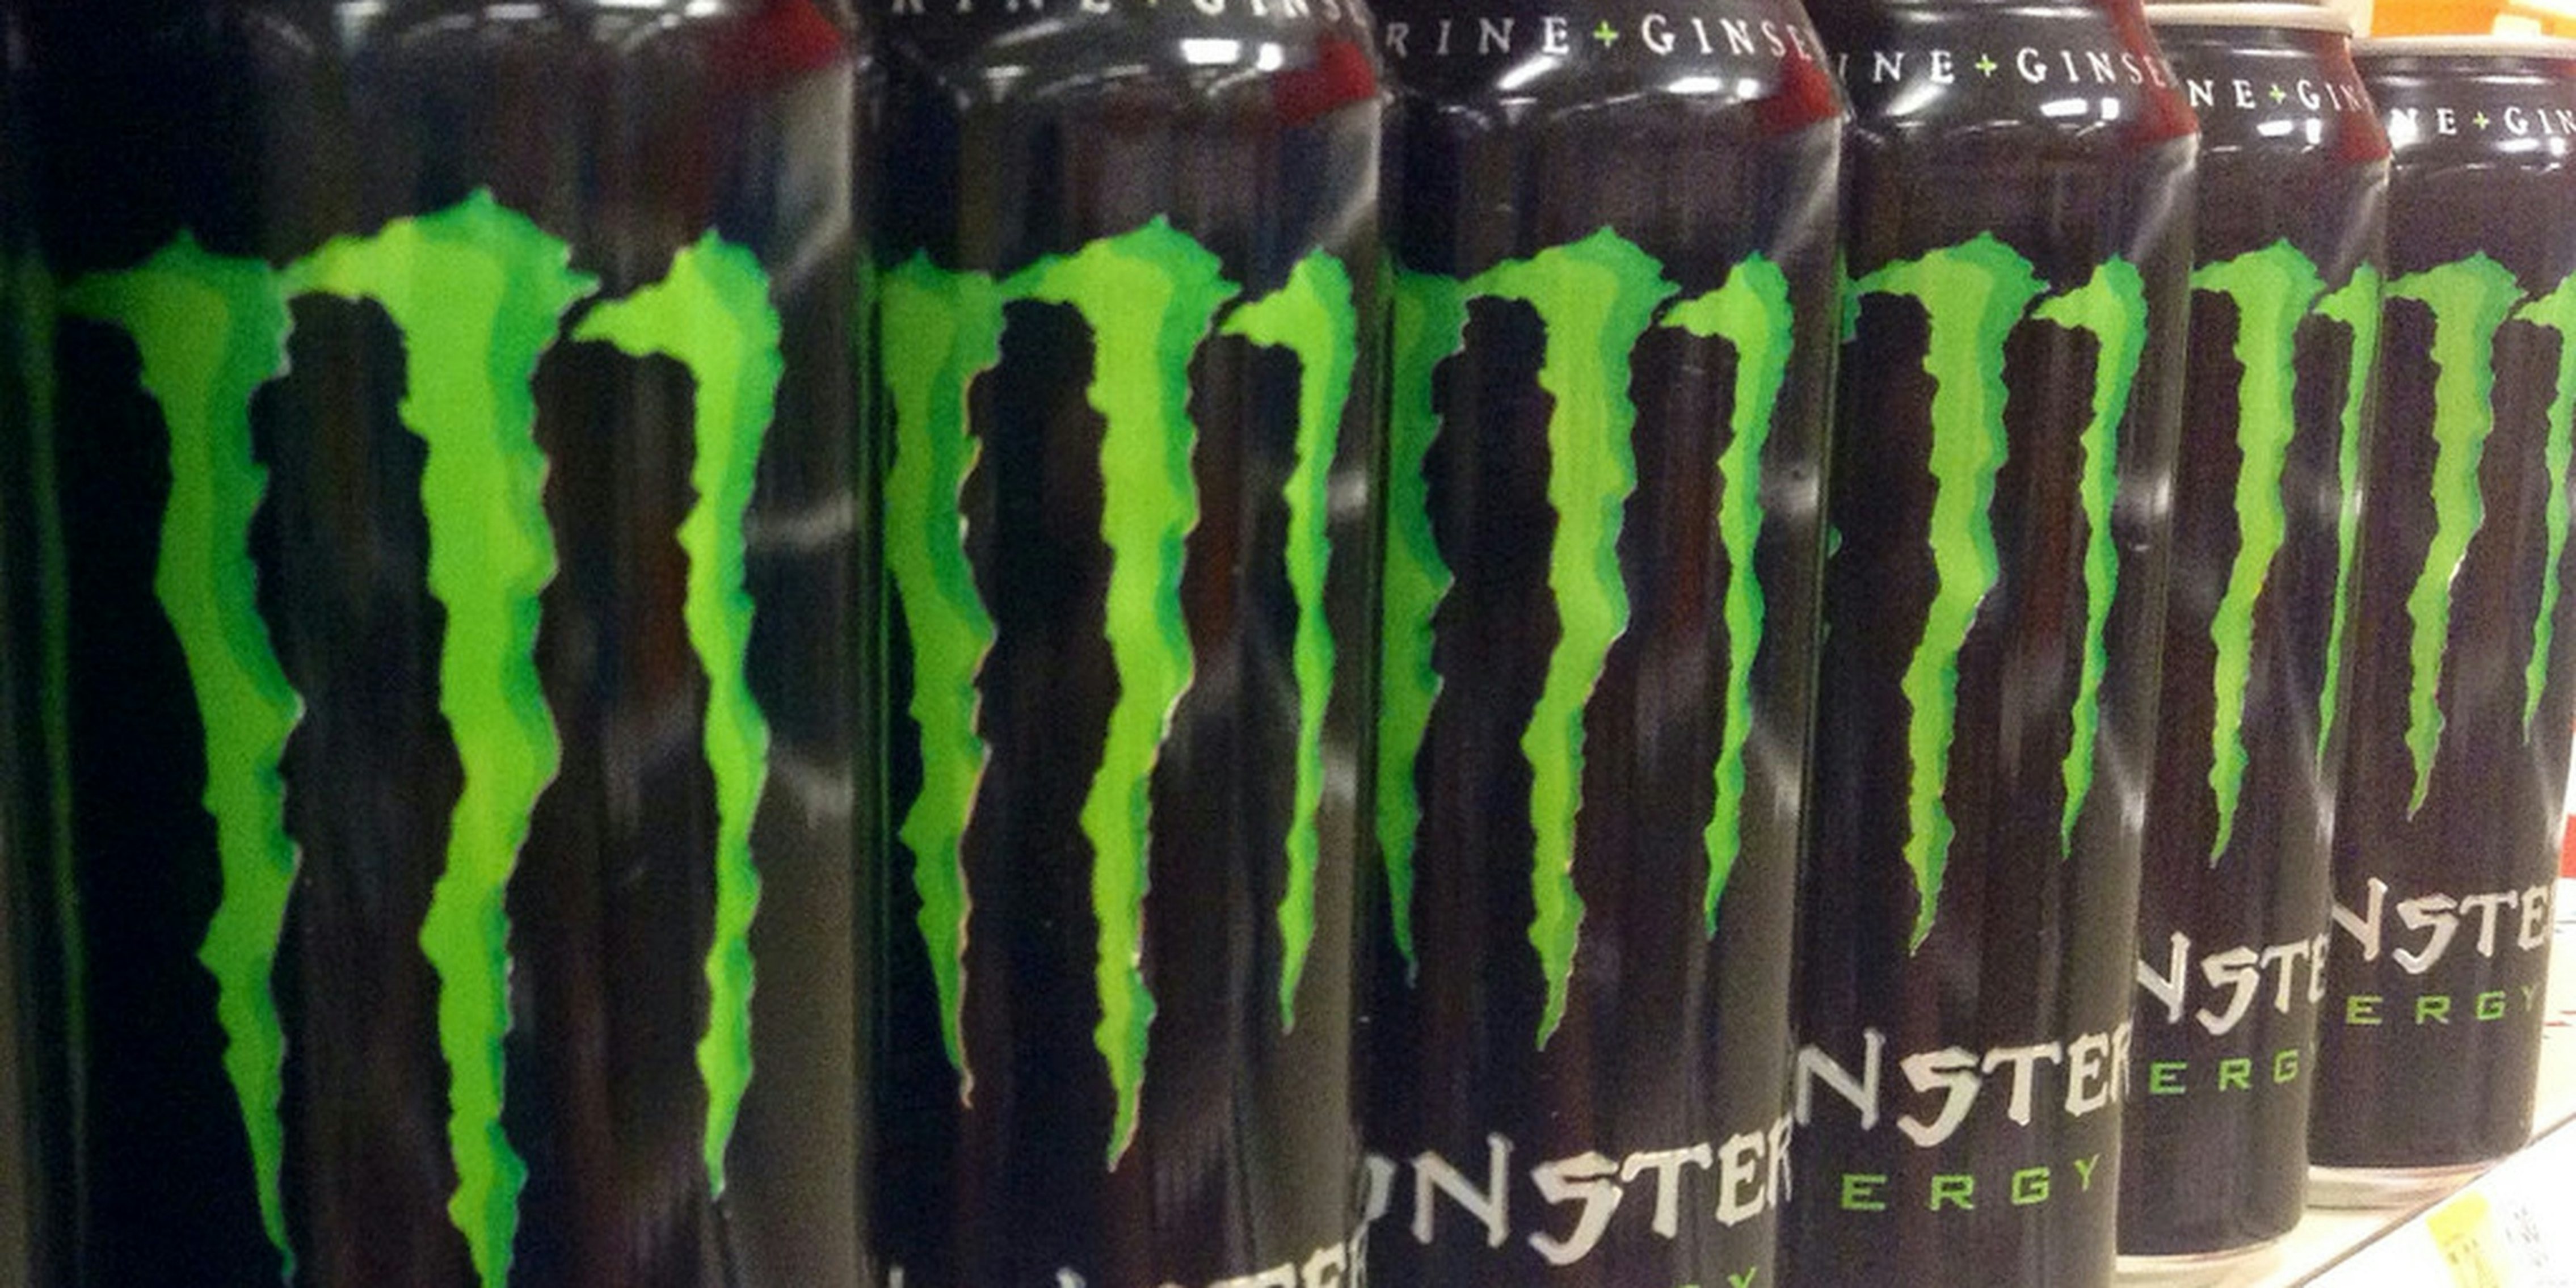 monster energy logo